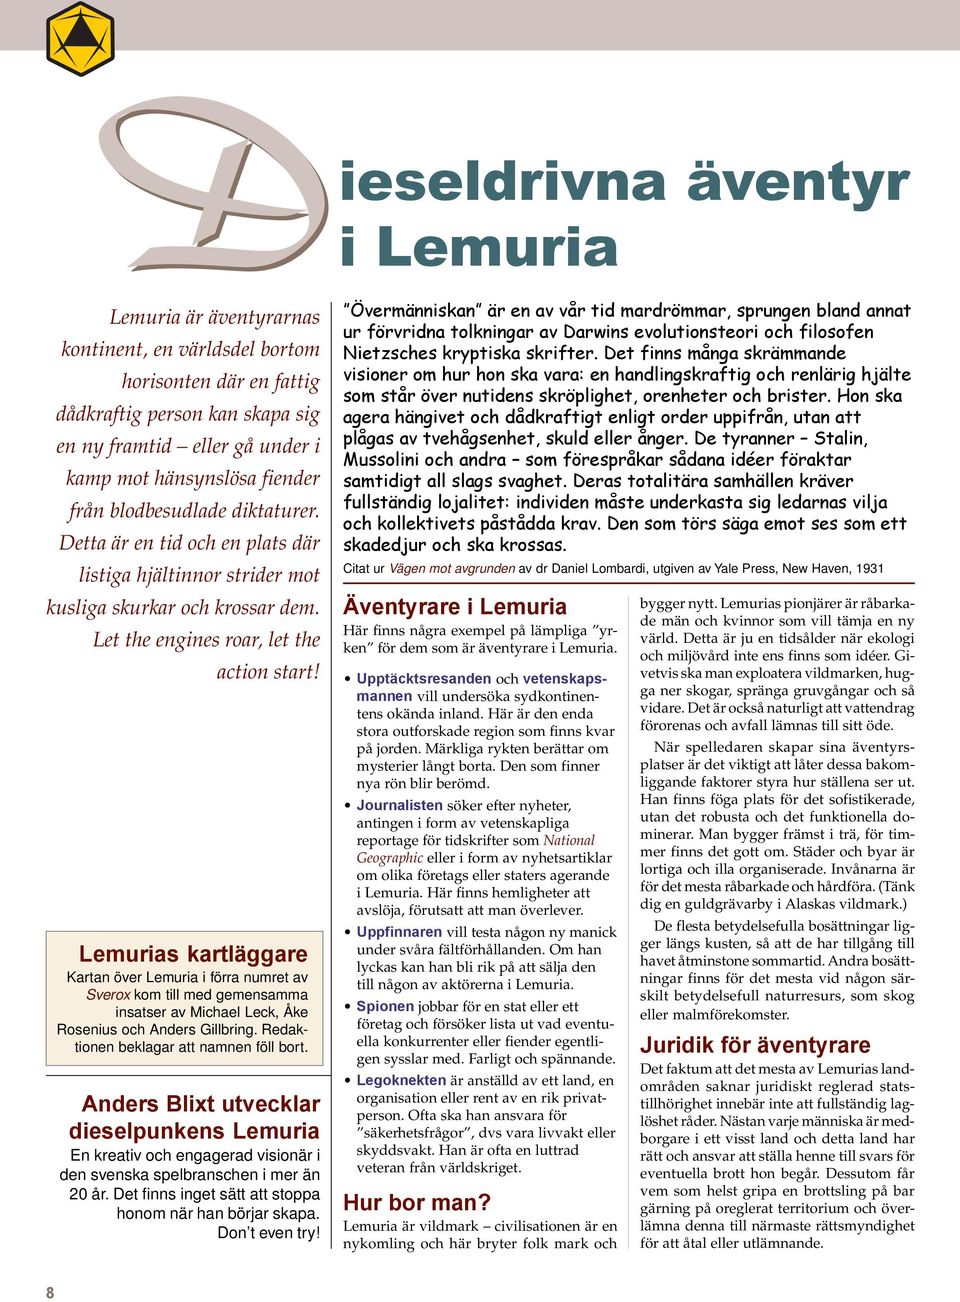 Lemurias kartläggare Kartan över Lemuria i förra numret av Sverox kom till med gemensamma insatser av Michael Leck, Åke Rosenius och Anders Gillbring. Redaktionen beklagar att namnen föll bort.